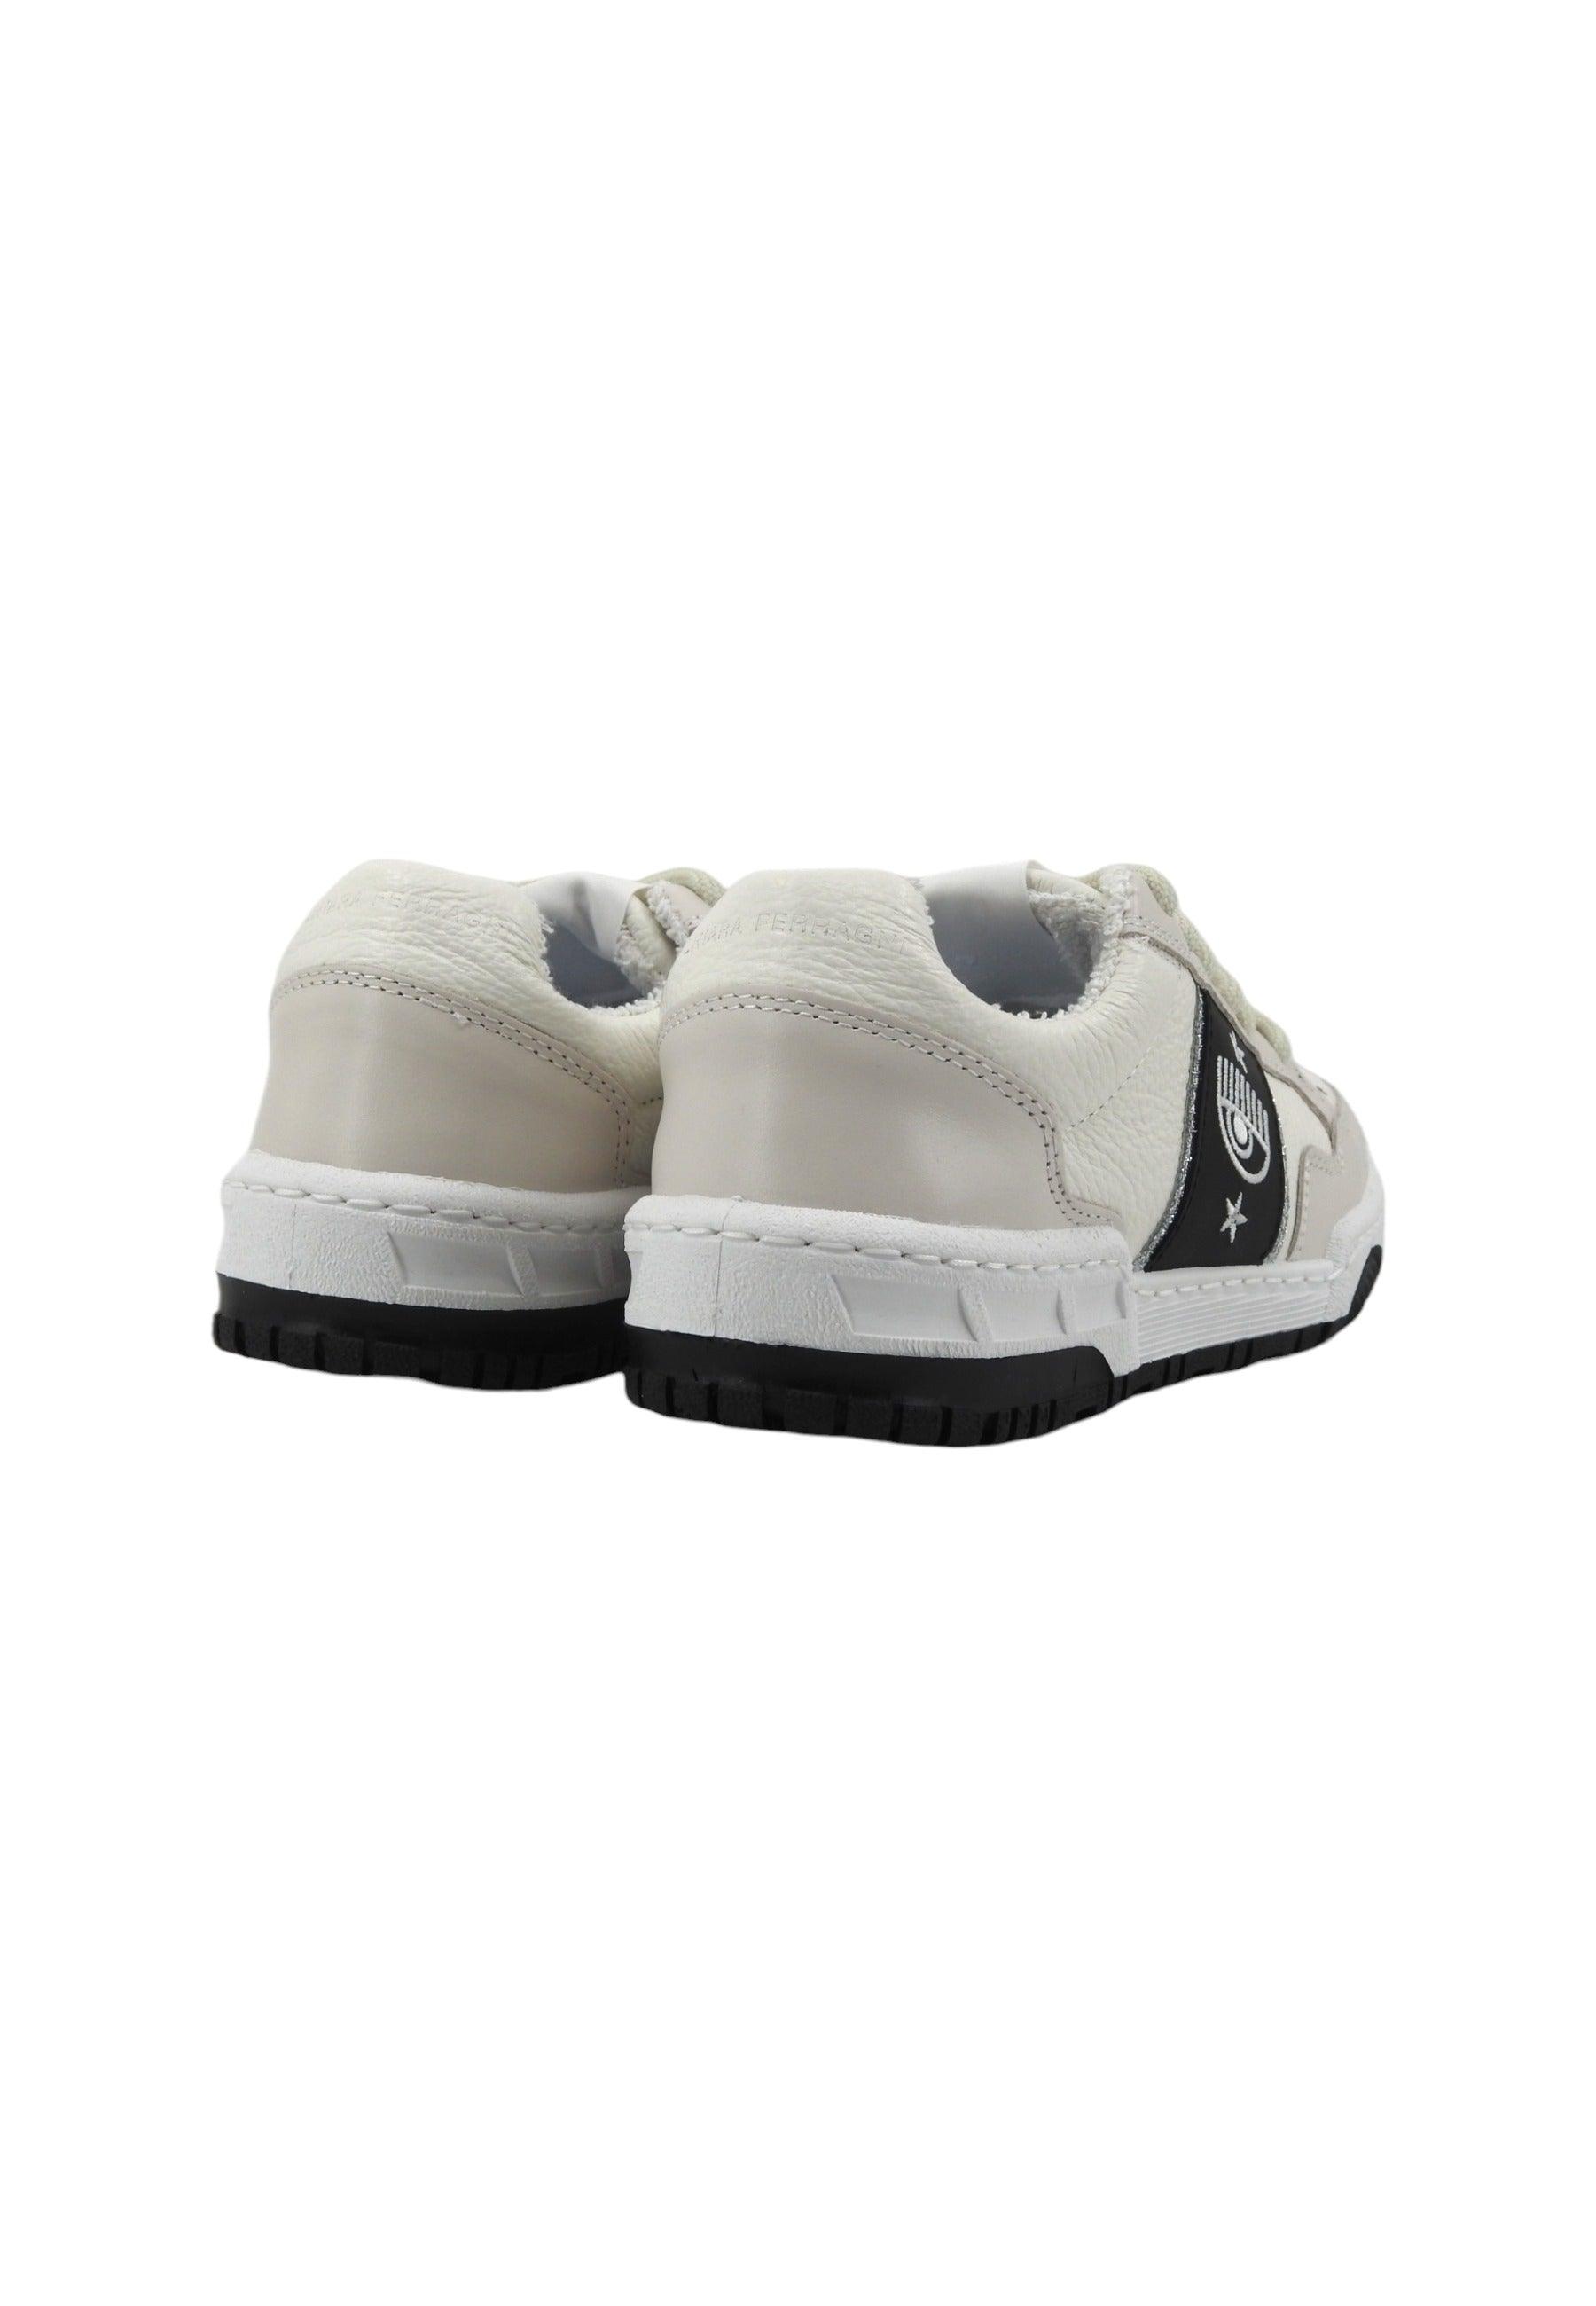 CHIARA FERRAGNI Sneaker Donna White Black CF3205-034 - Sandrini Calzature e Abbigliamento